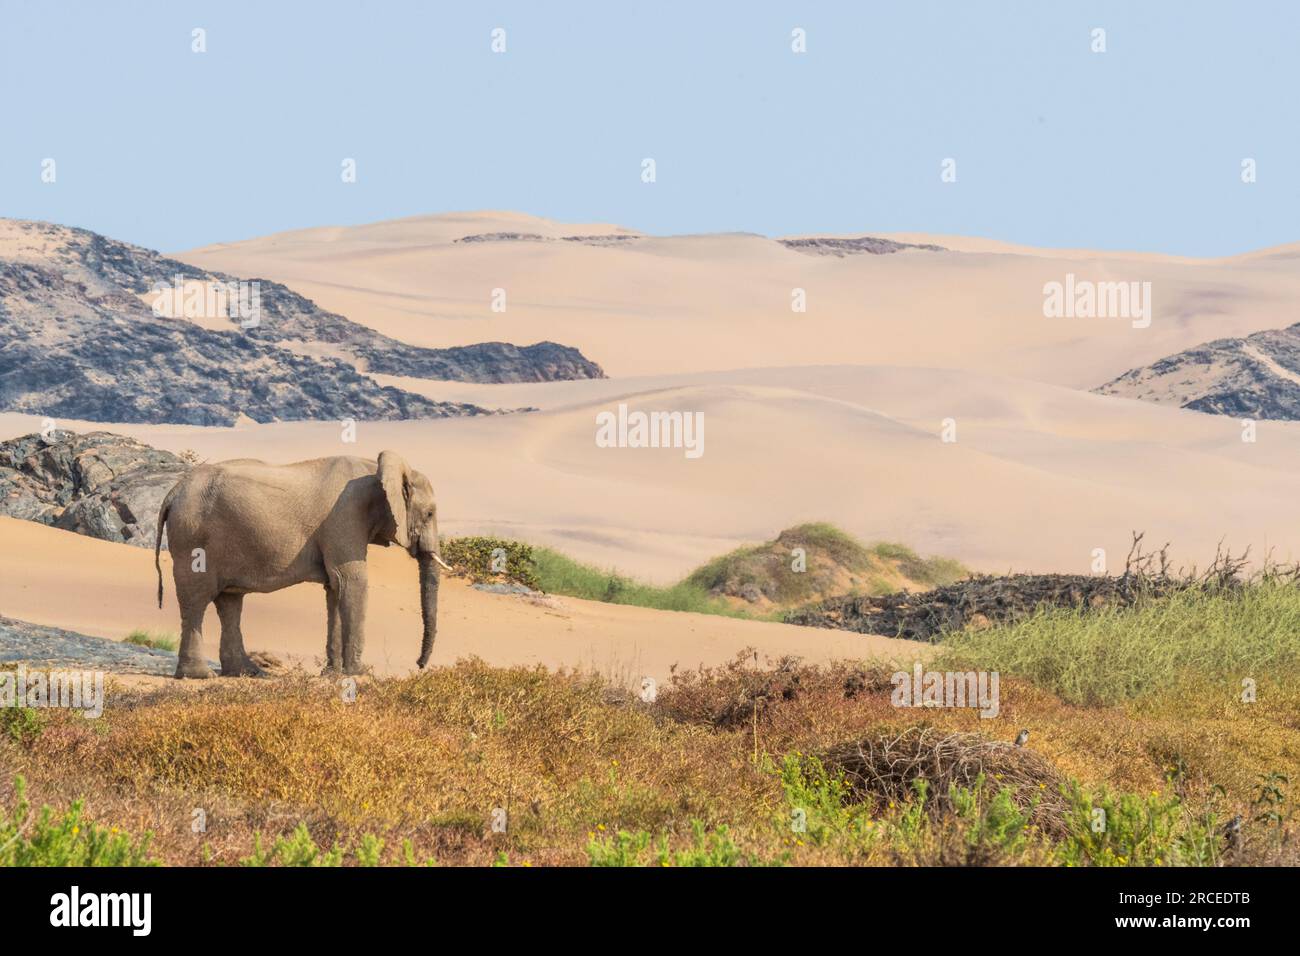 Los elefantes africanos adaptados al desierto en Namibia se han adaptado a su ambiente seco y semidesértico al tener una masa corporal más pequeña con piernas más largas. Foto de stock